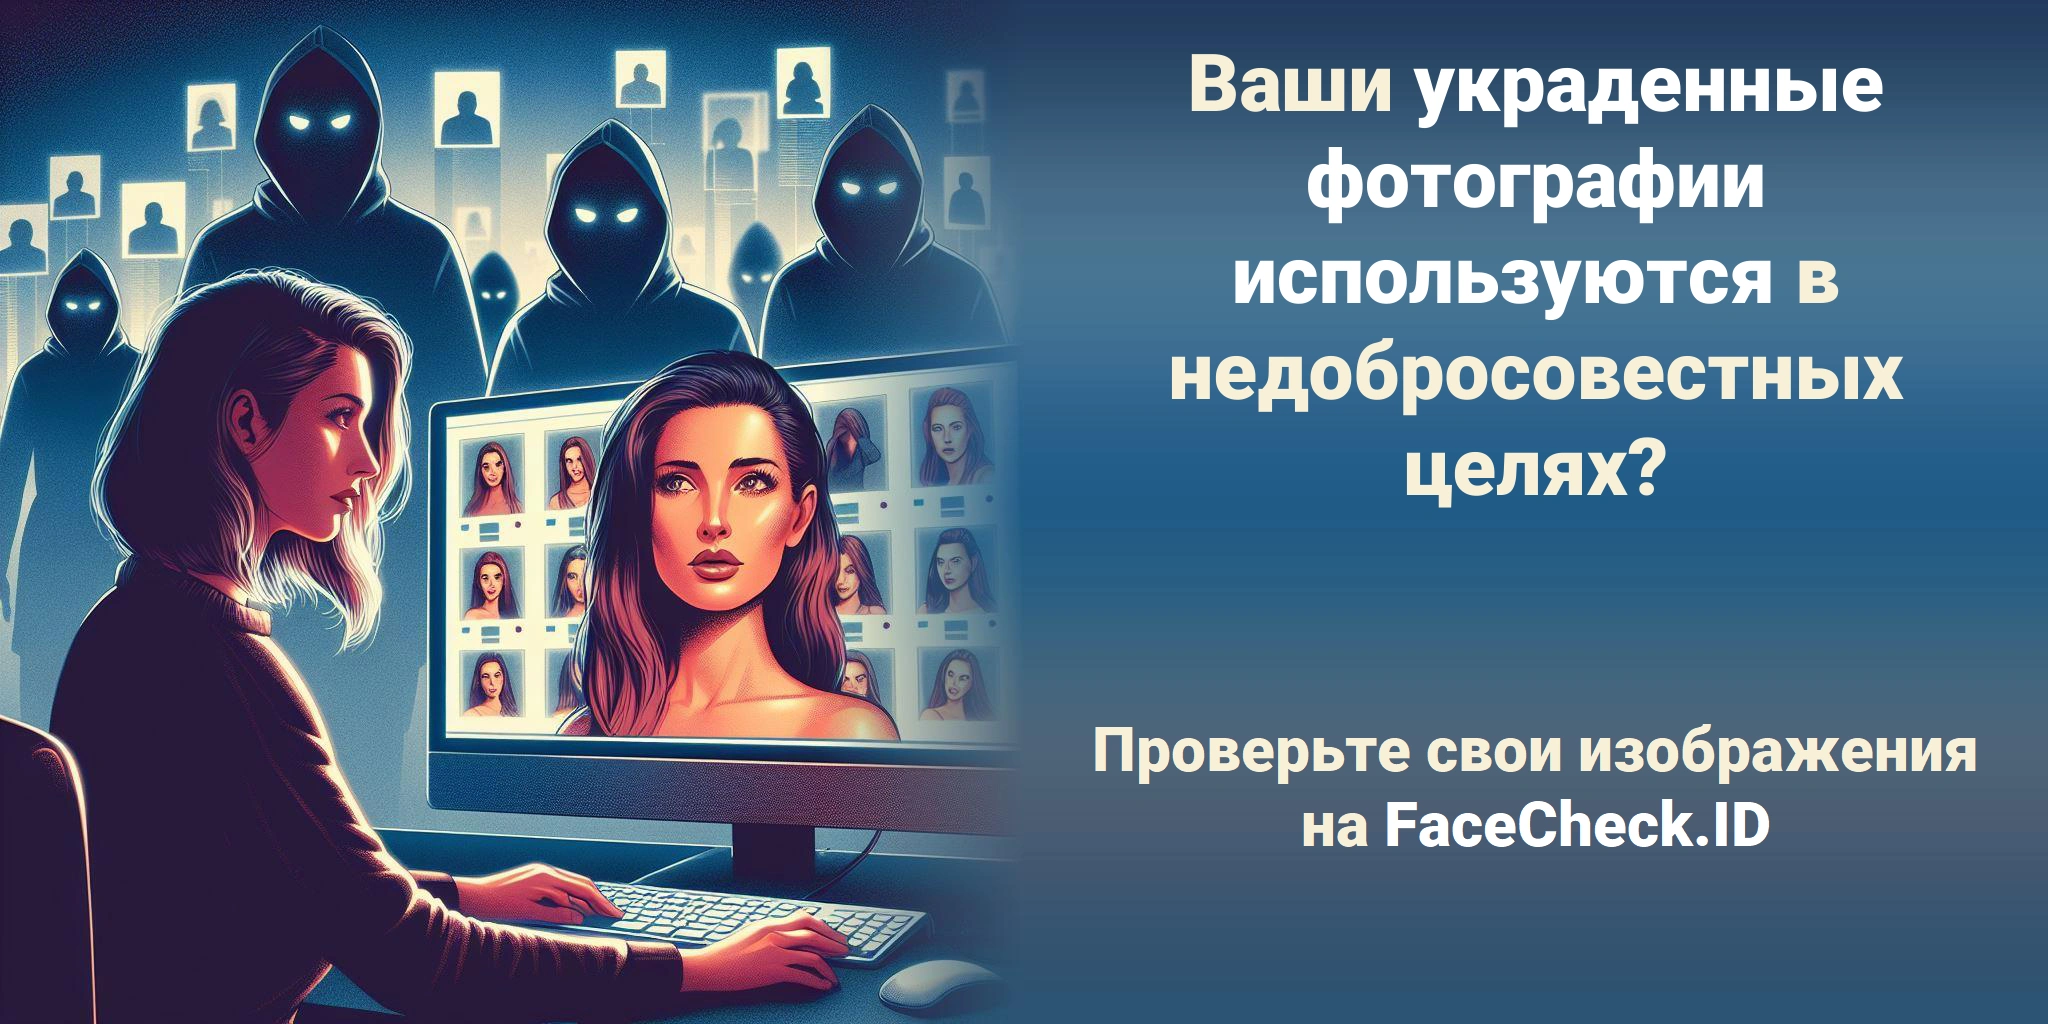 Борьба с кражей изображений для блогеров, актеров и моделей: защита вашего онлайн-образа